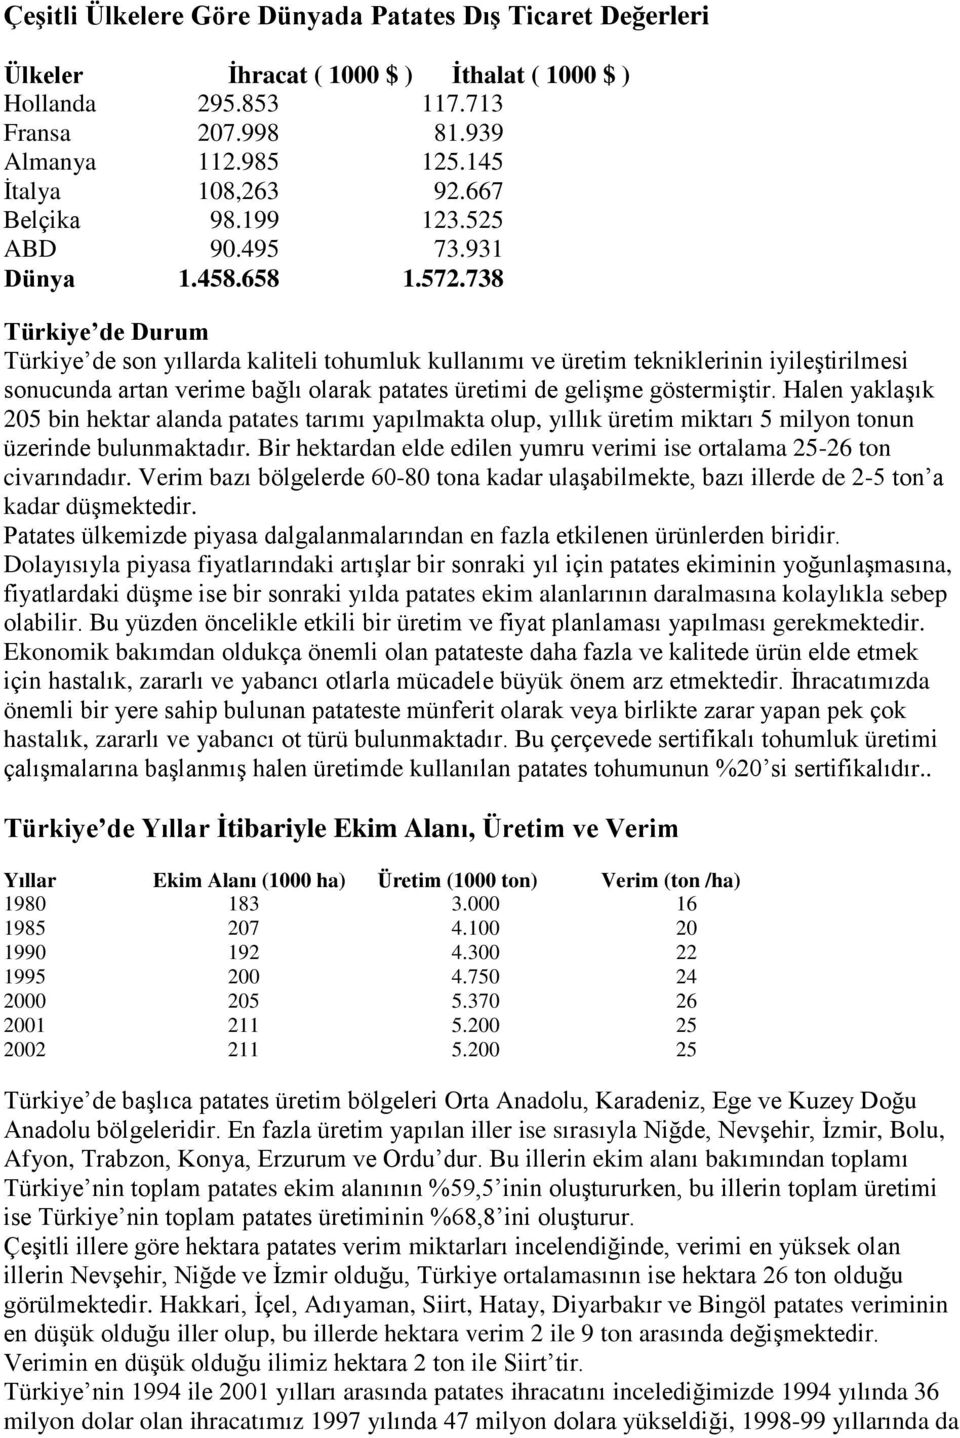 738 Türkiye de Durum Türkiye de son yıllarda kaliteli tohumluk kullanımı ve üretim tekniklerinin iyileştirilmesi sonucunda artan verime bağlı olarak patates üretimi de gelişme göstermiştir.